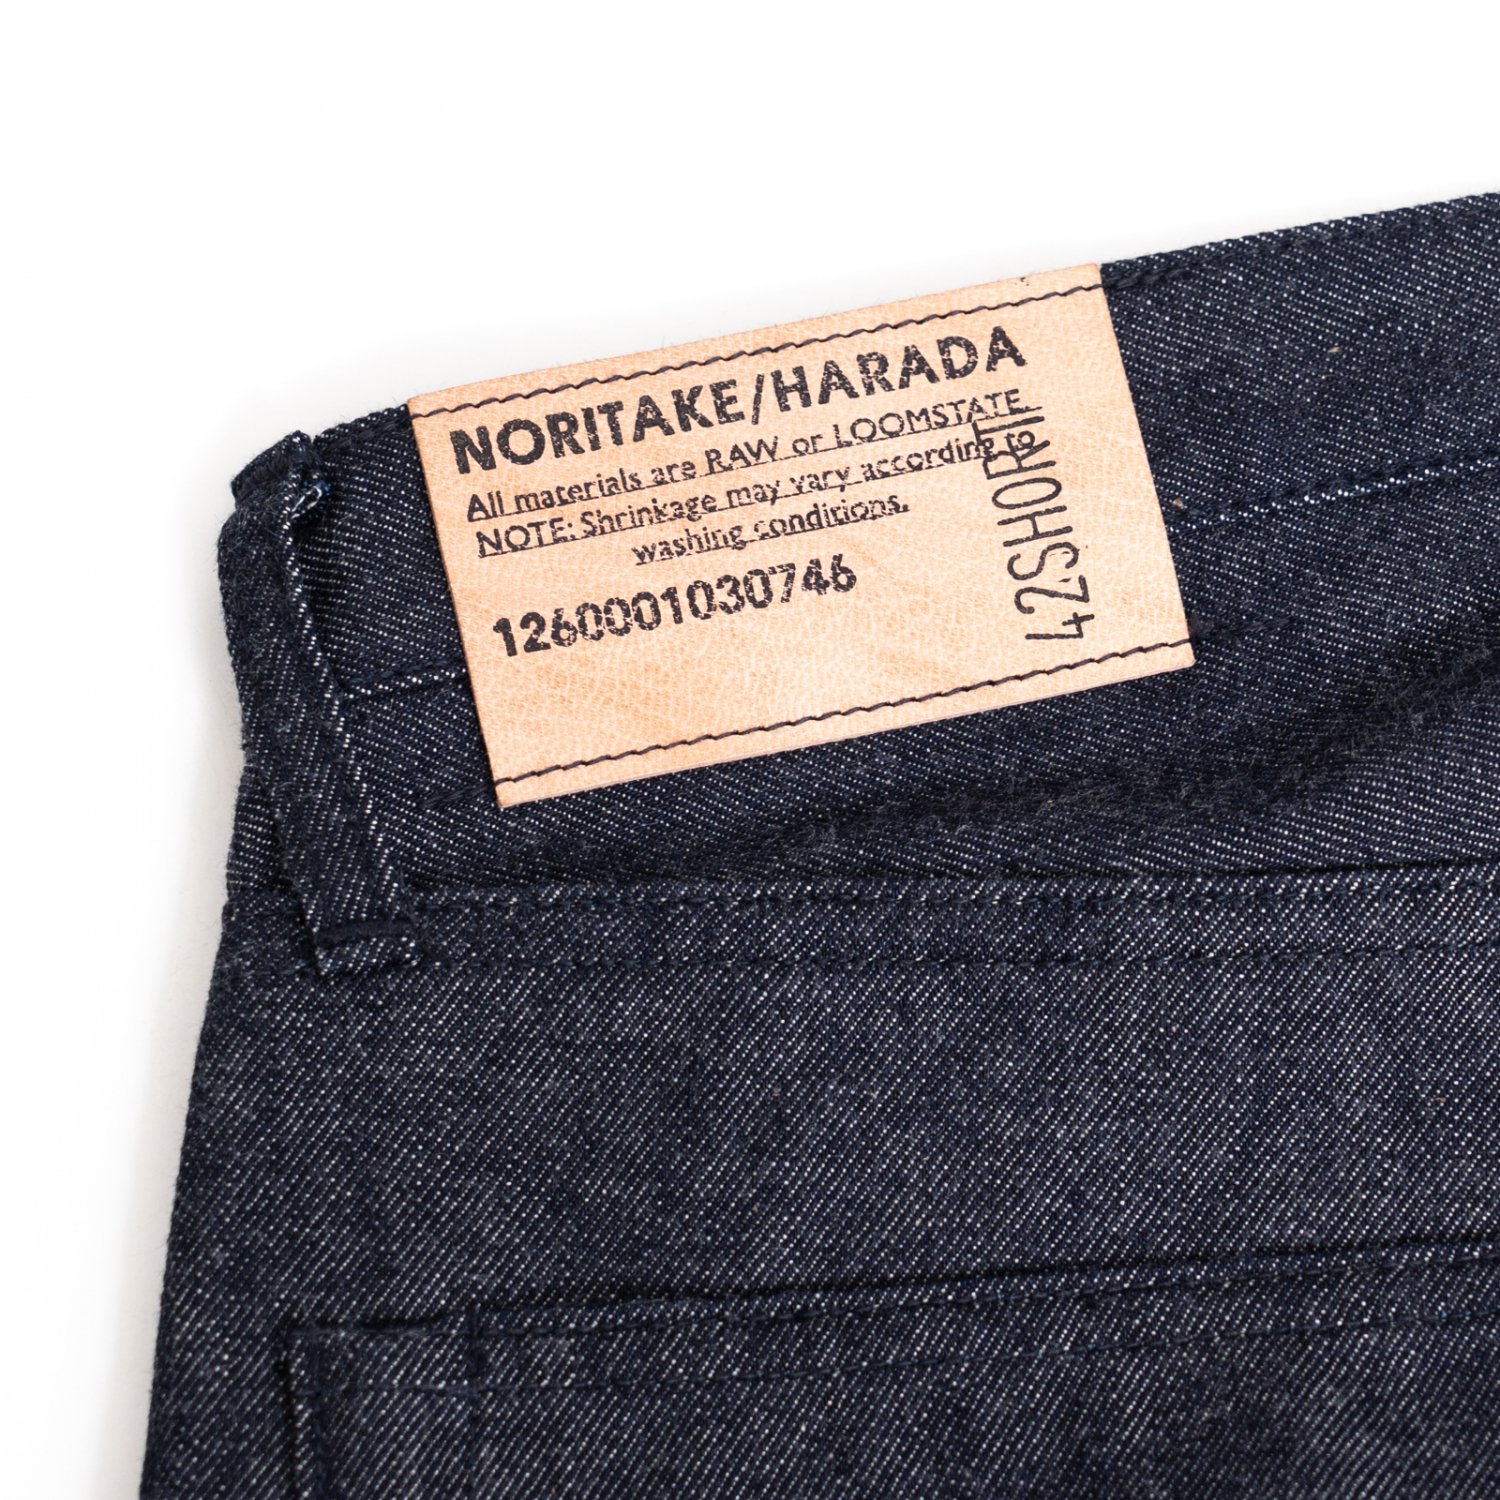 NORITAKE/HARADA * Denim Pants 42inch Short